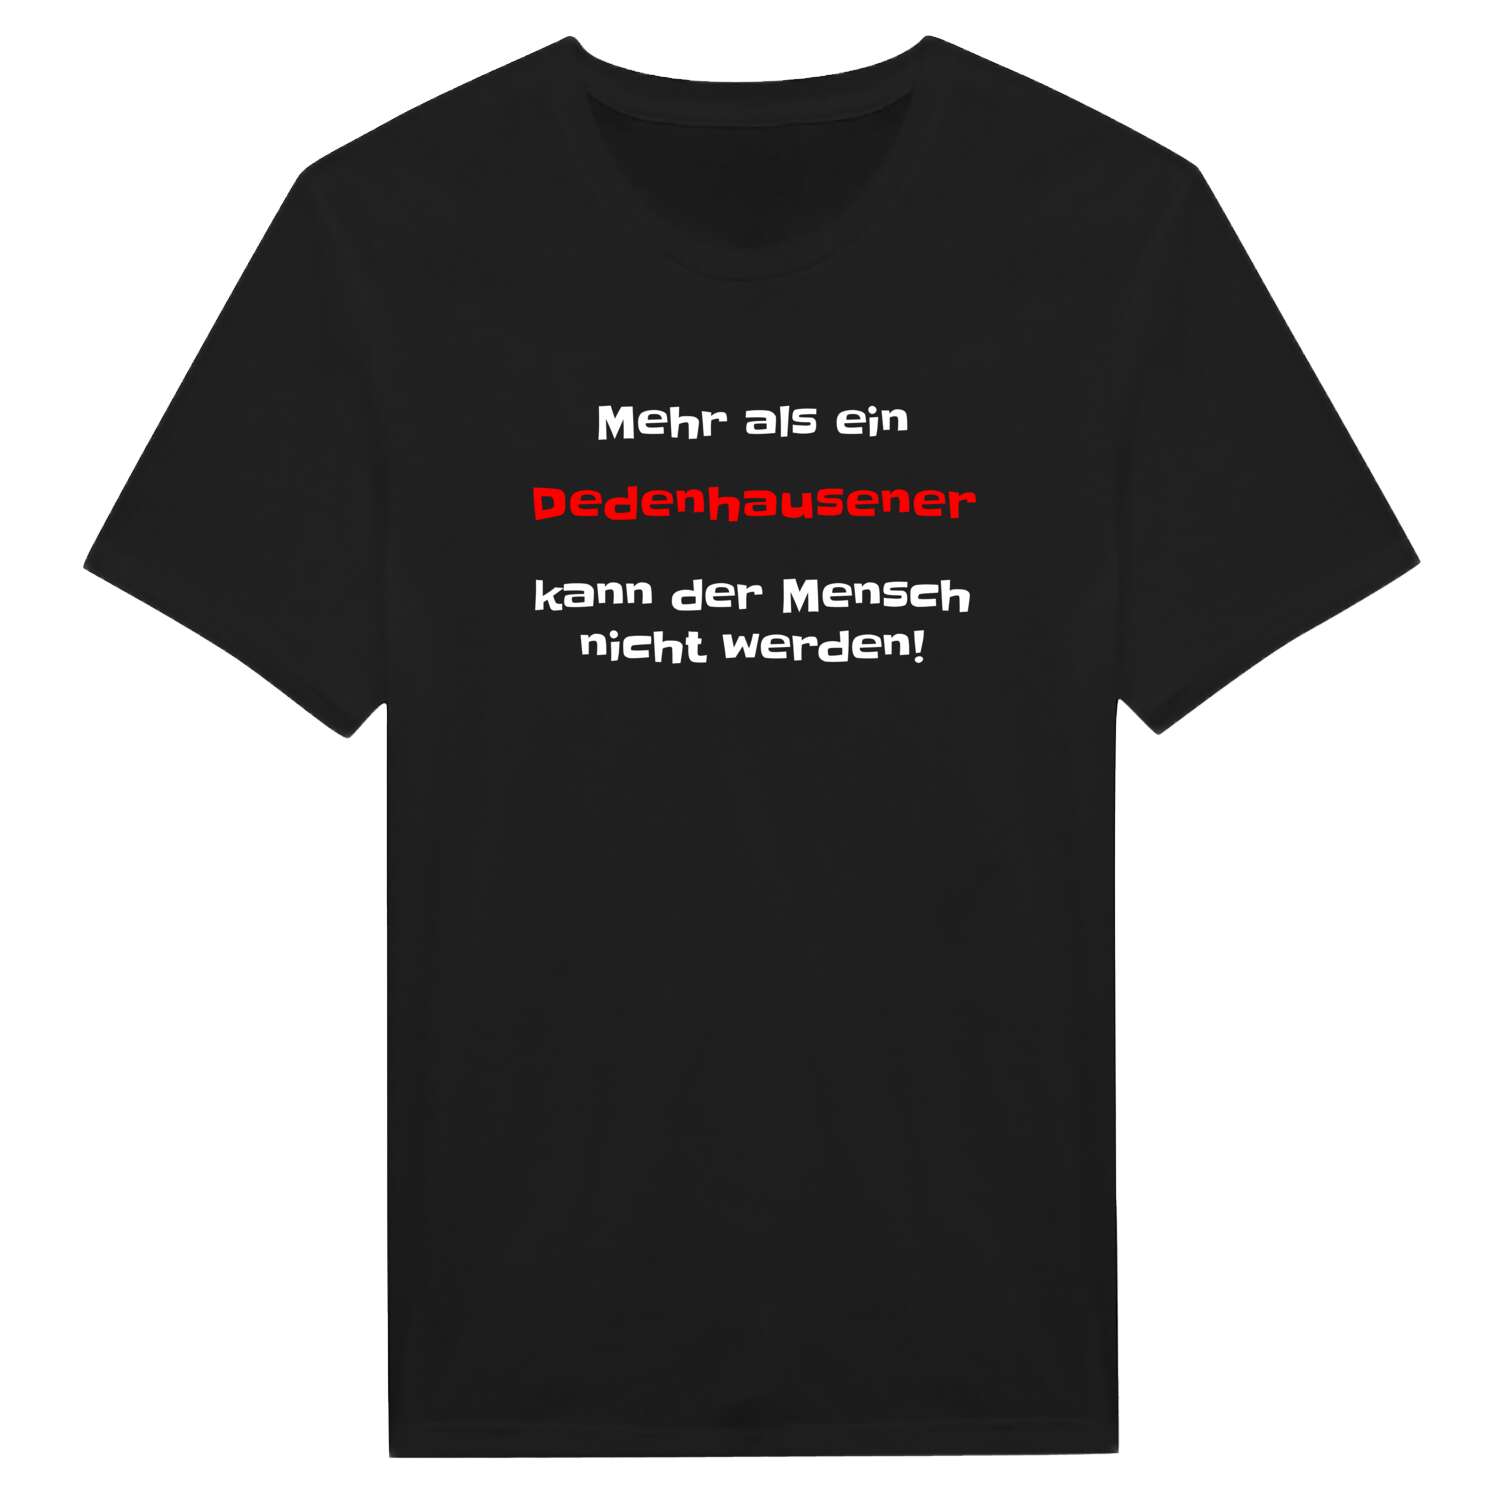 Dedenhausen T-Shirt »Mehr als ein«